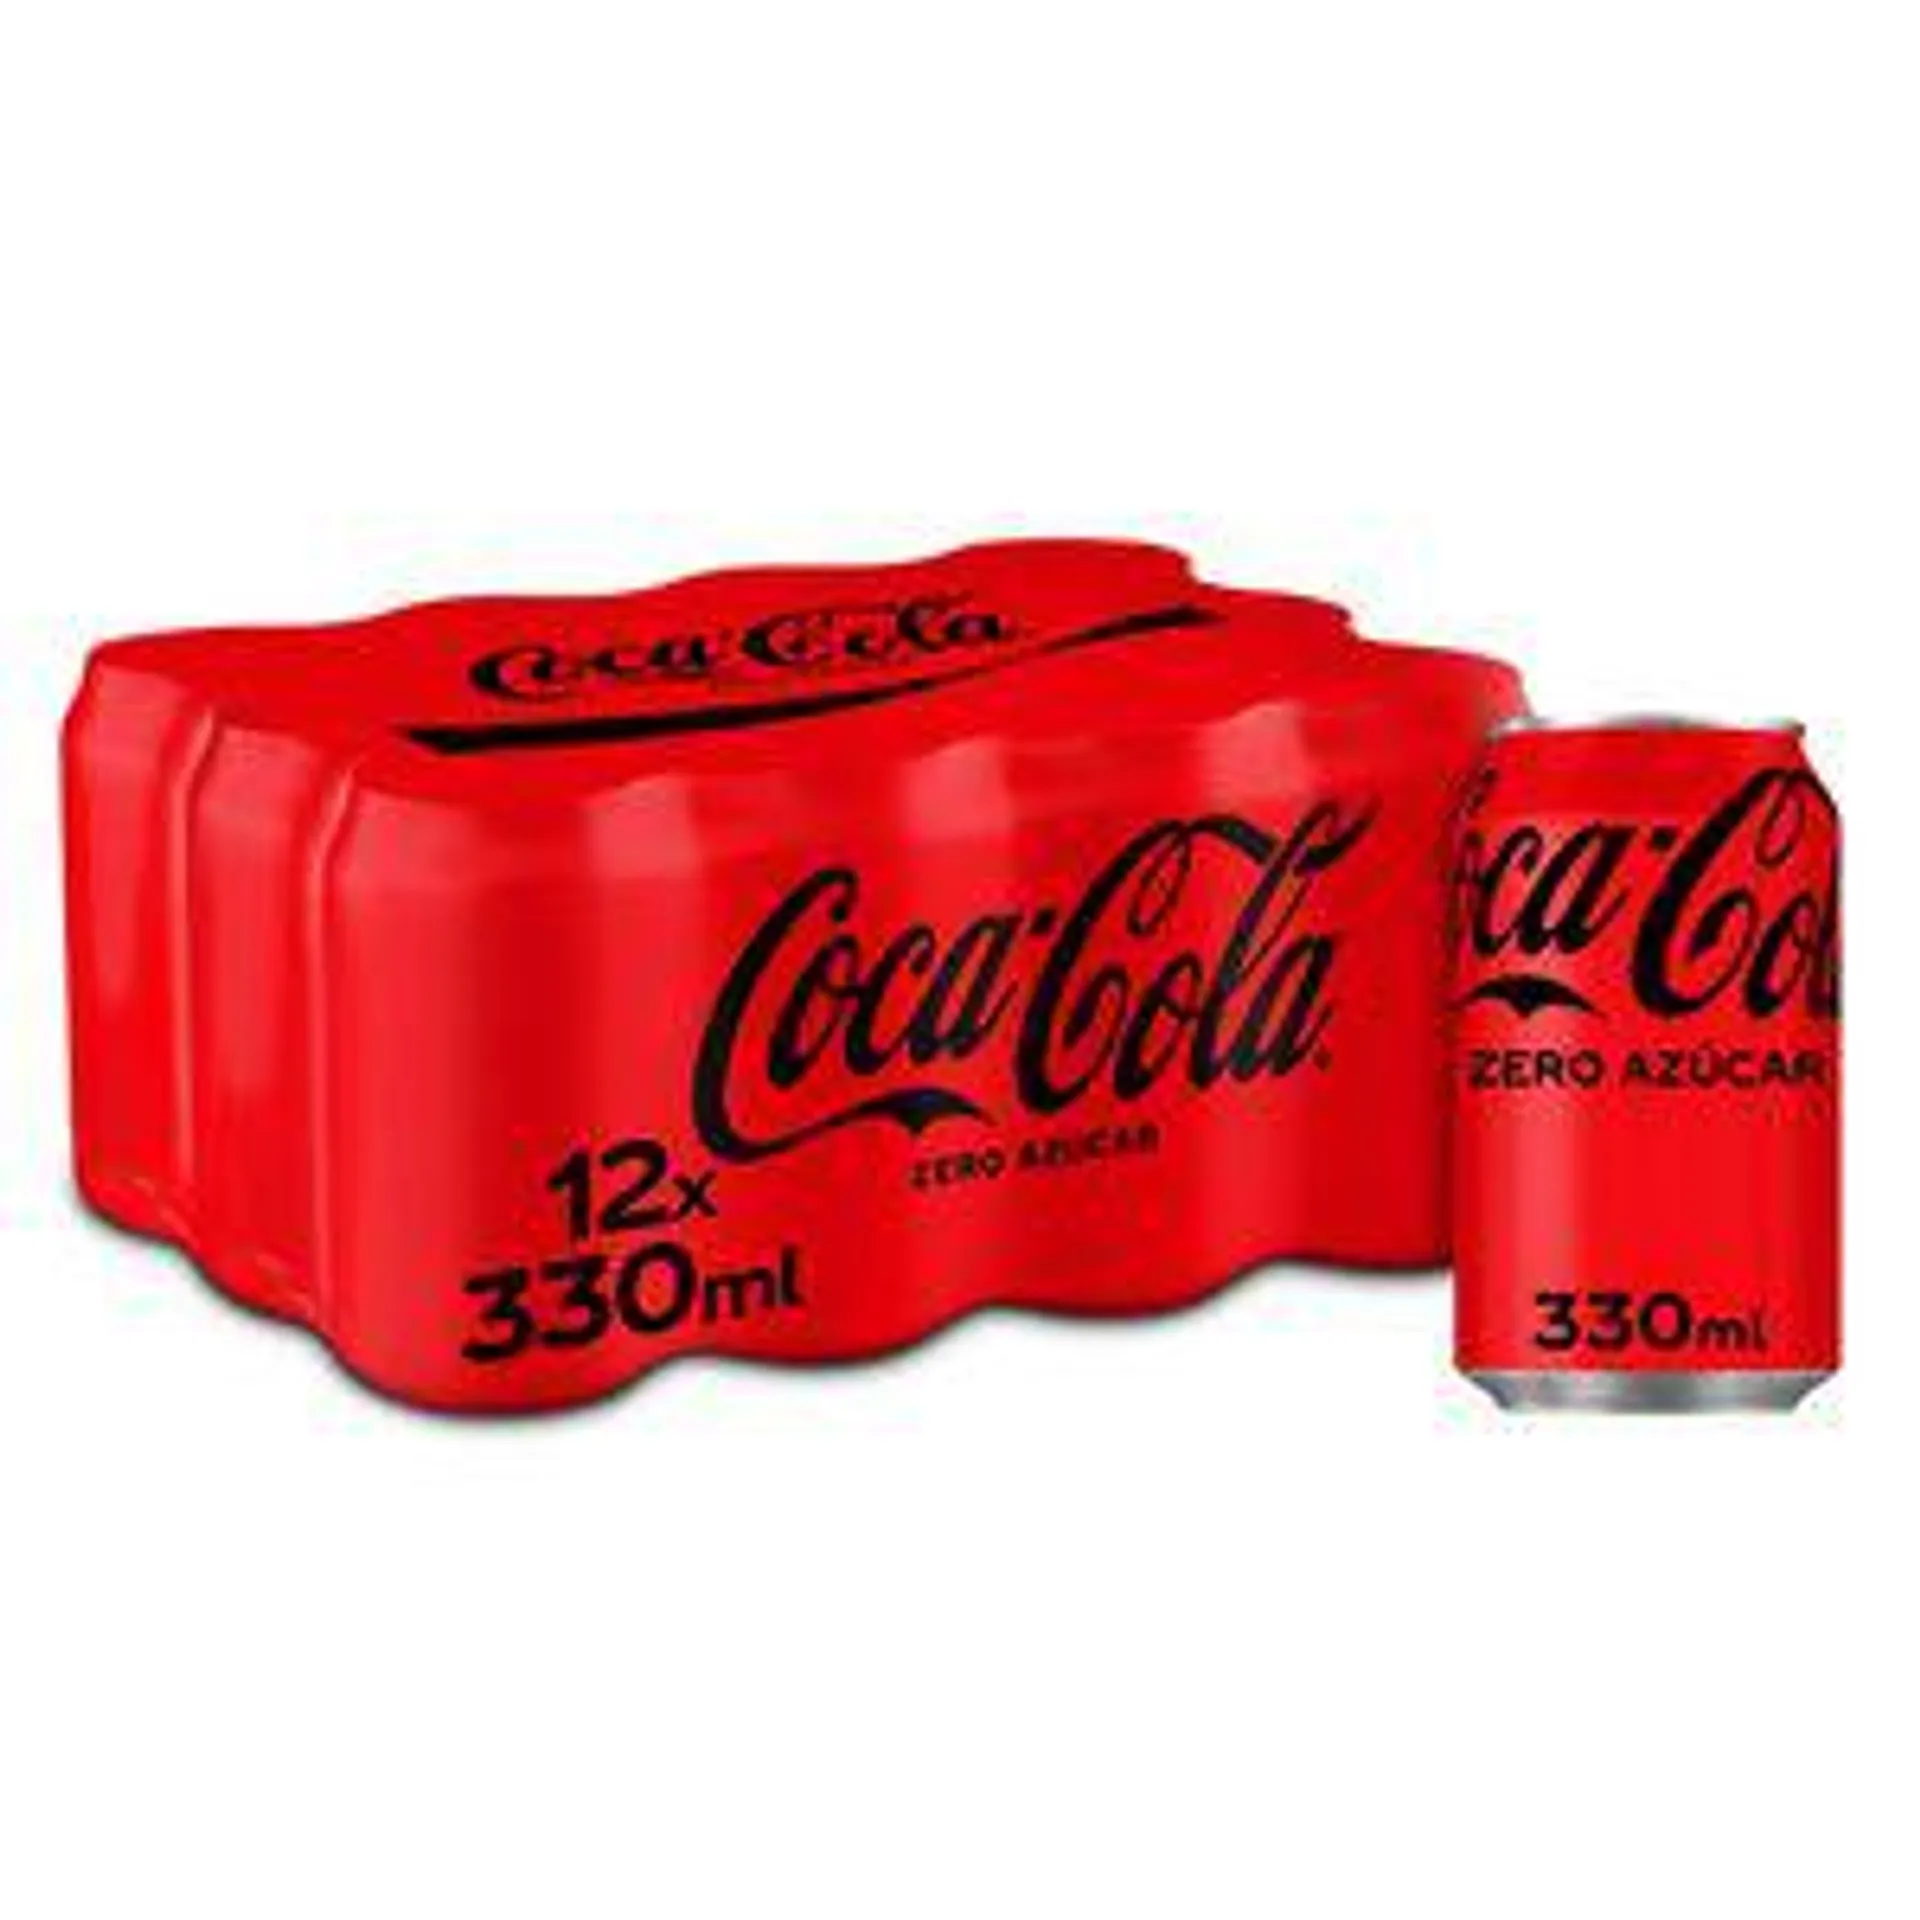 COCA-COLA zero pack 12 latas 33 cl